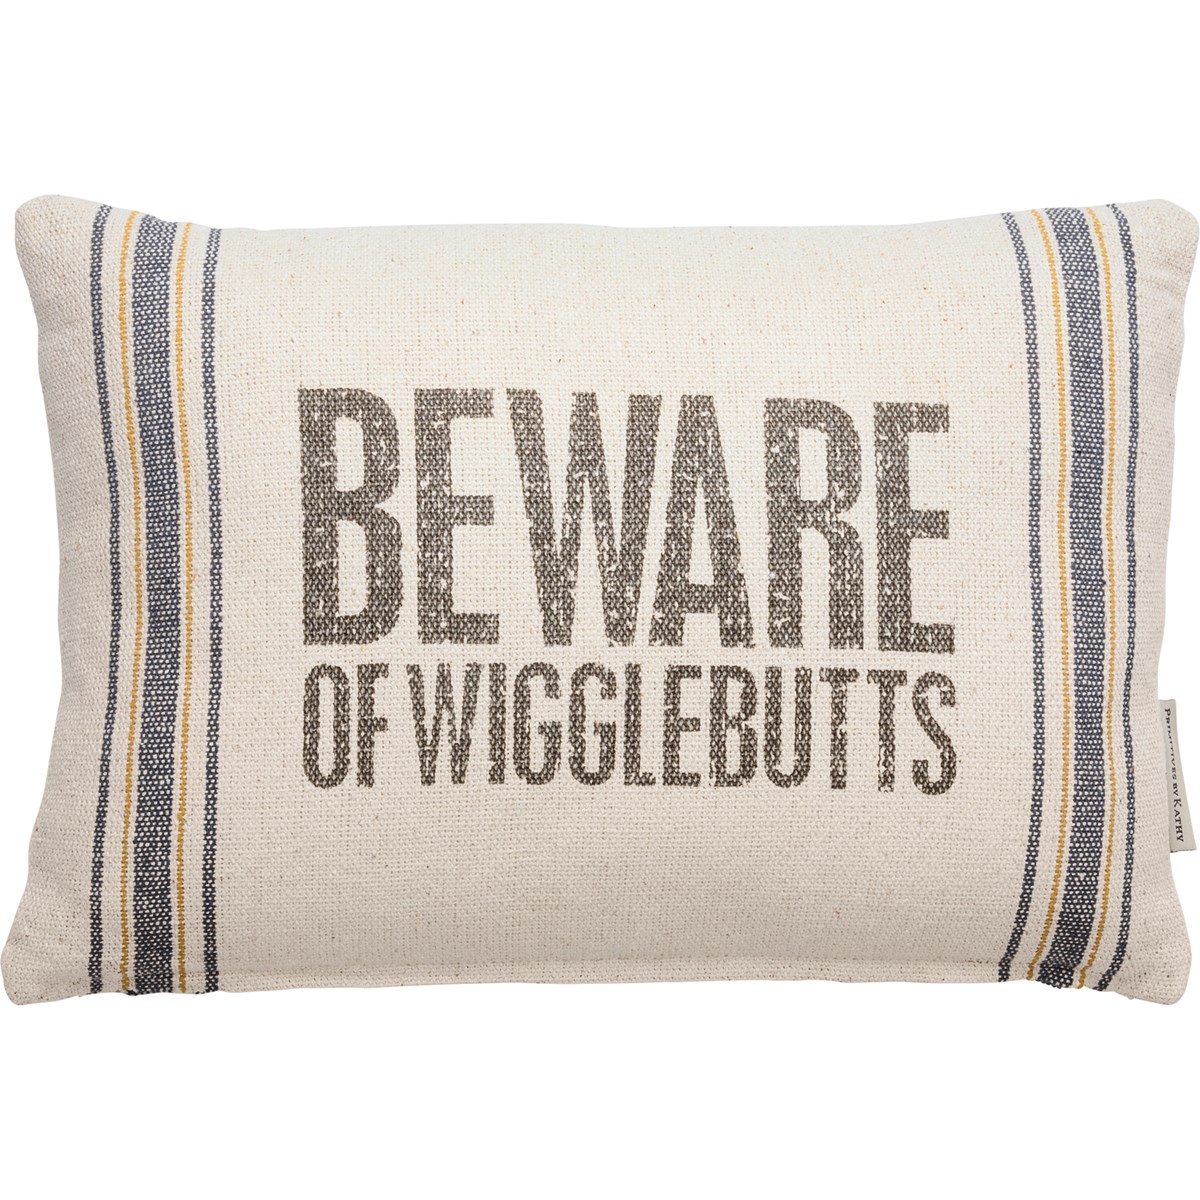 Beware Of Wigglebutts Pillow - Cotton, Zipper